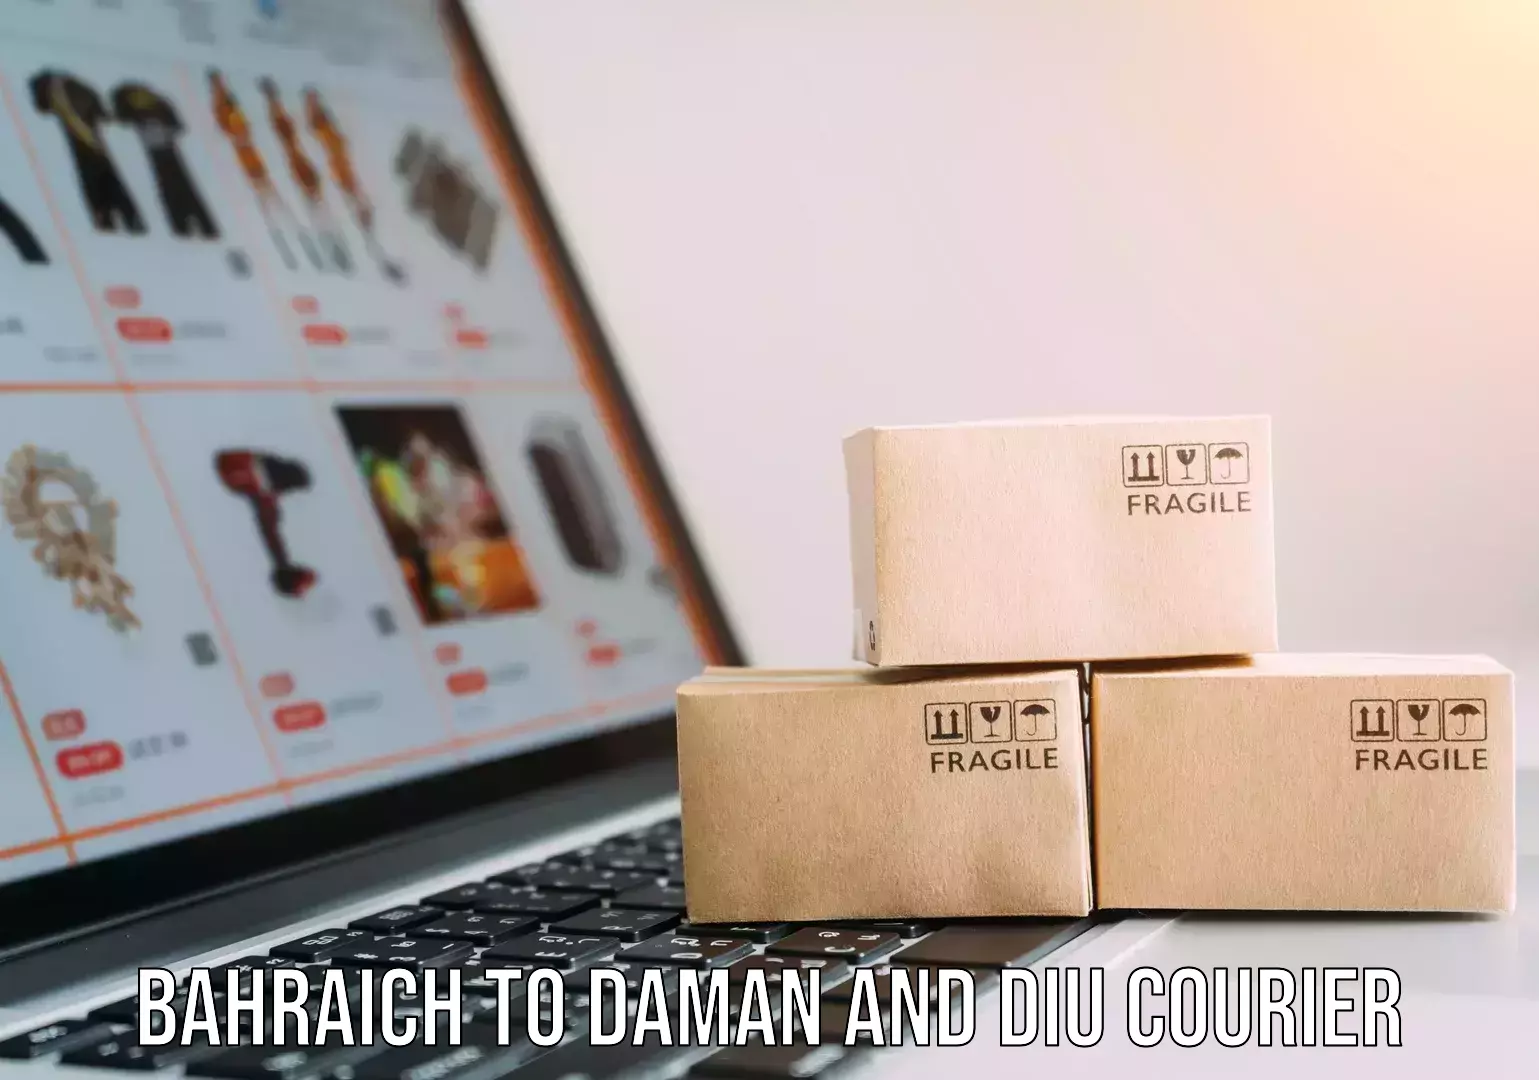 Advanced parcel tracking Bahraich to Daman and Diu